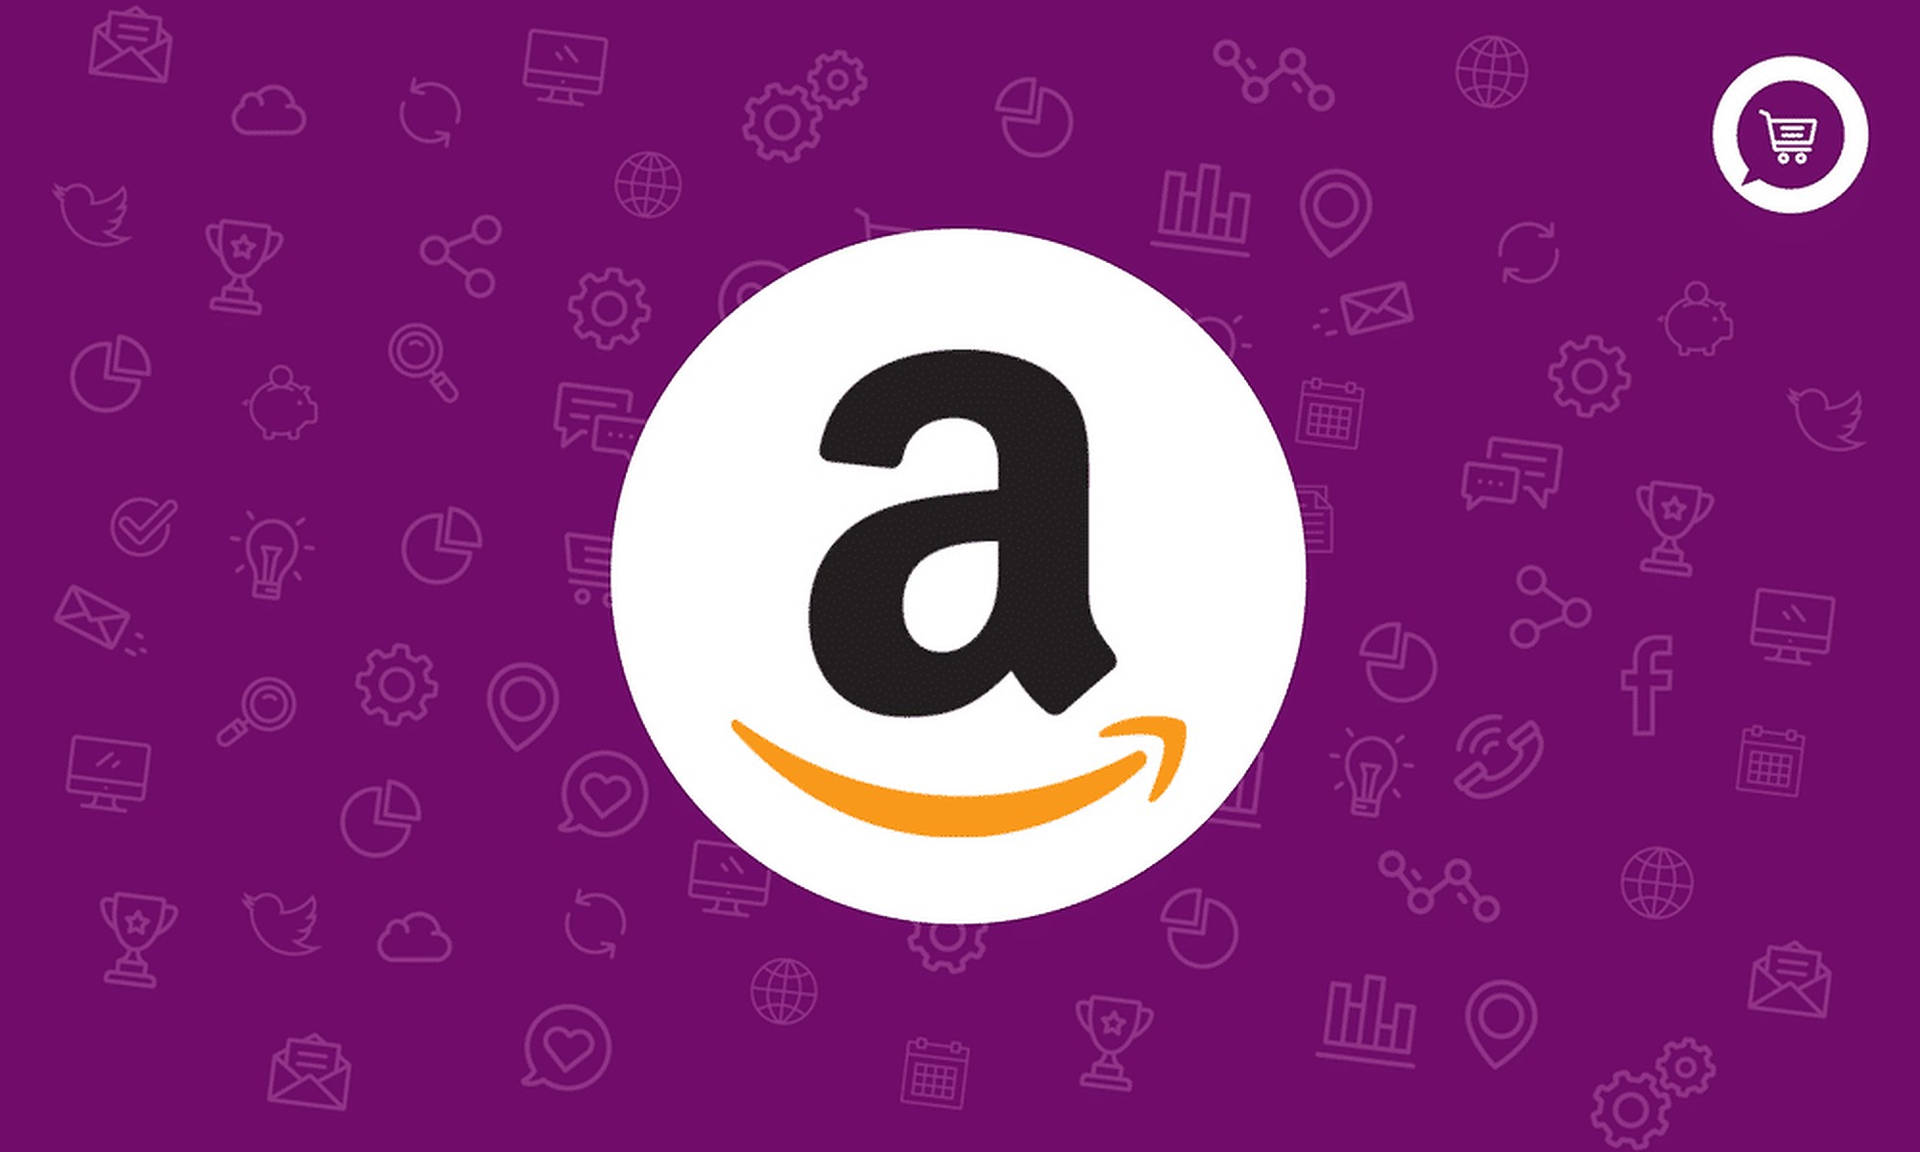 Amazon Logo And Icons Background